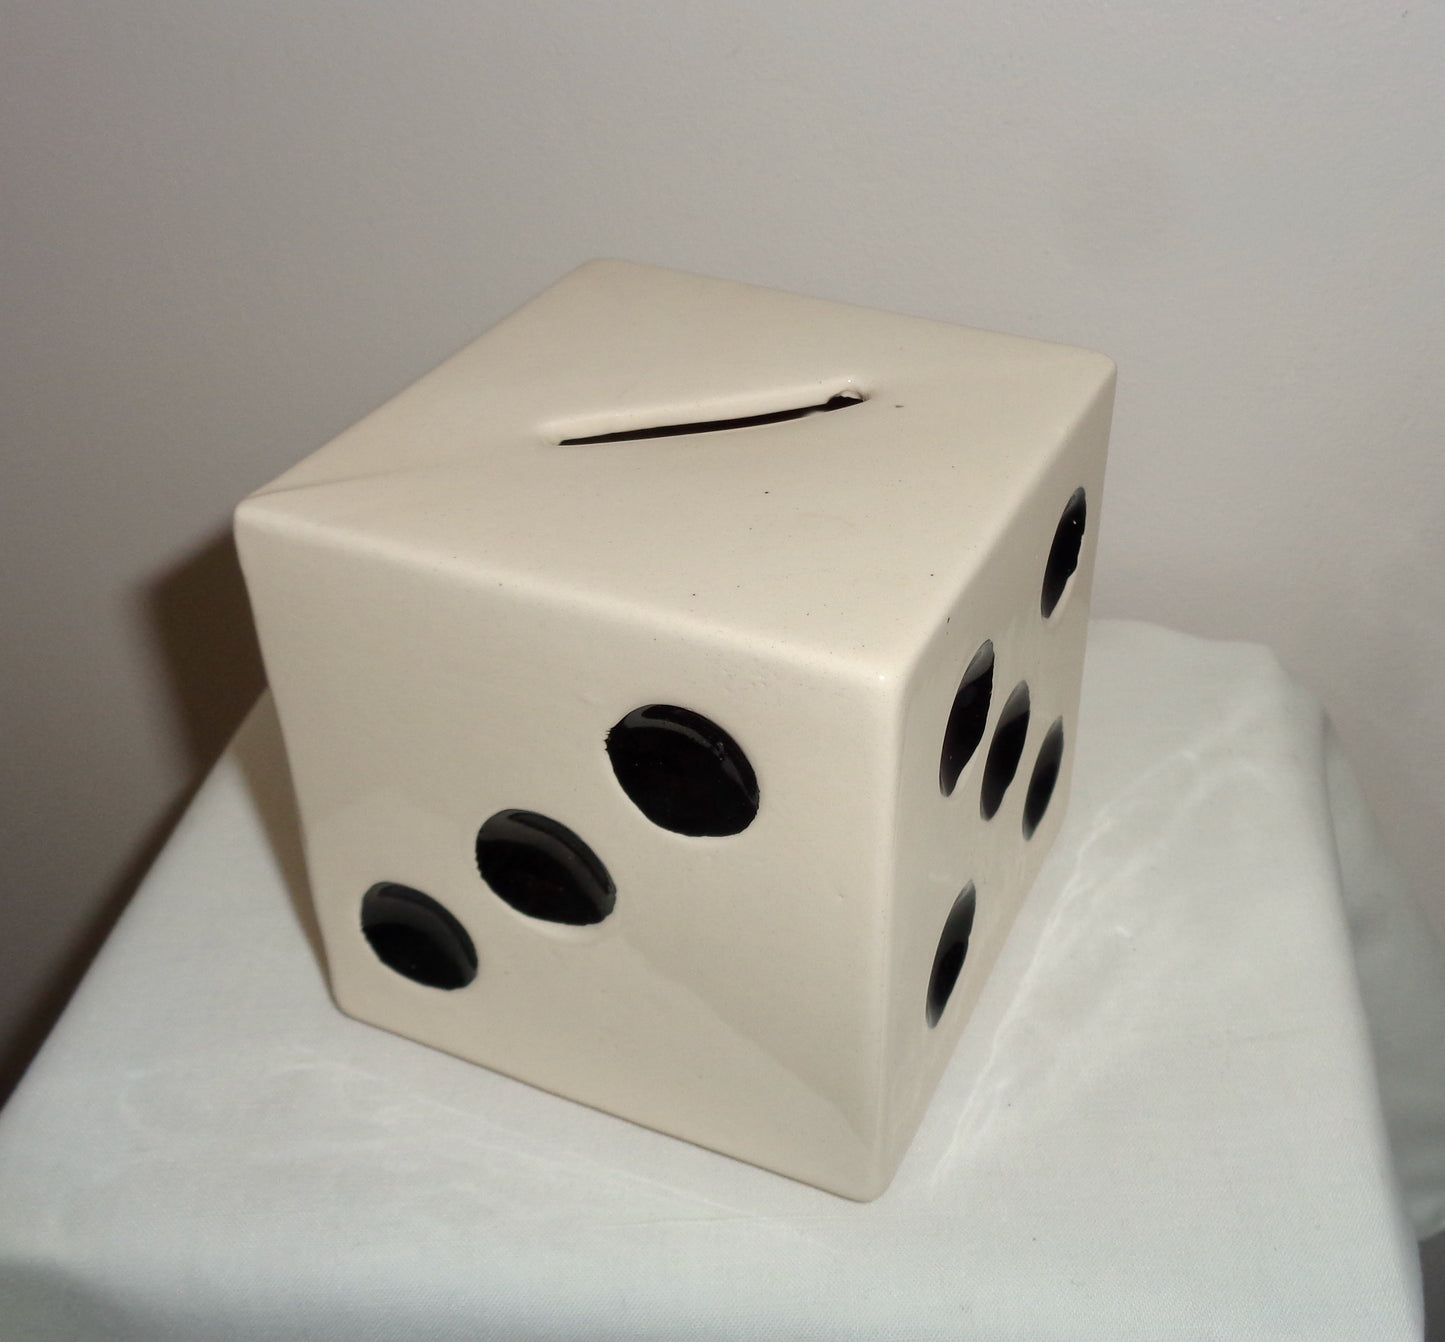 1980s R Moss Ltd Die (Dice) Ceramic Cubic Money Box 1027